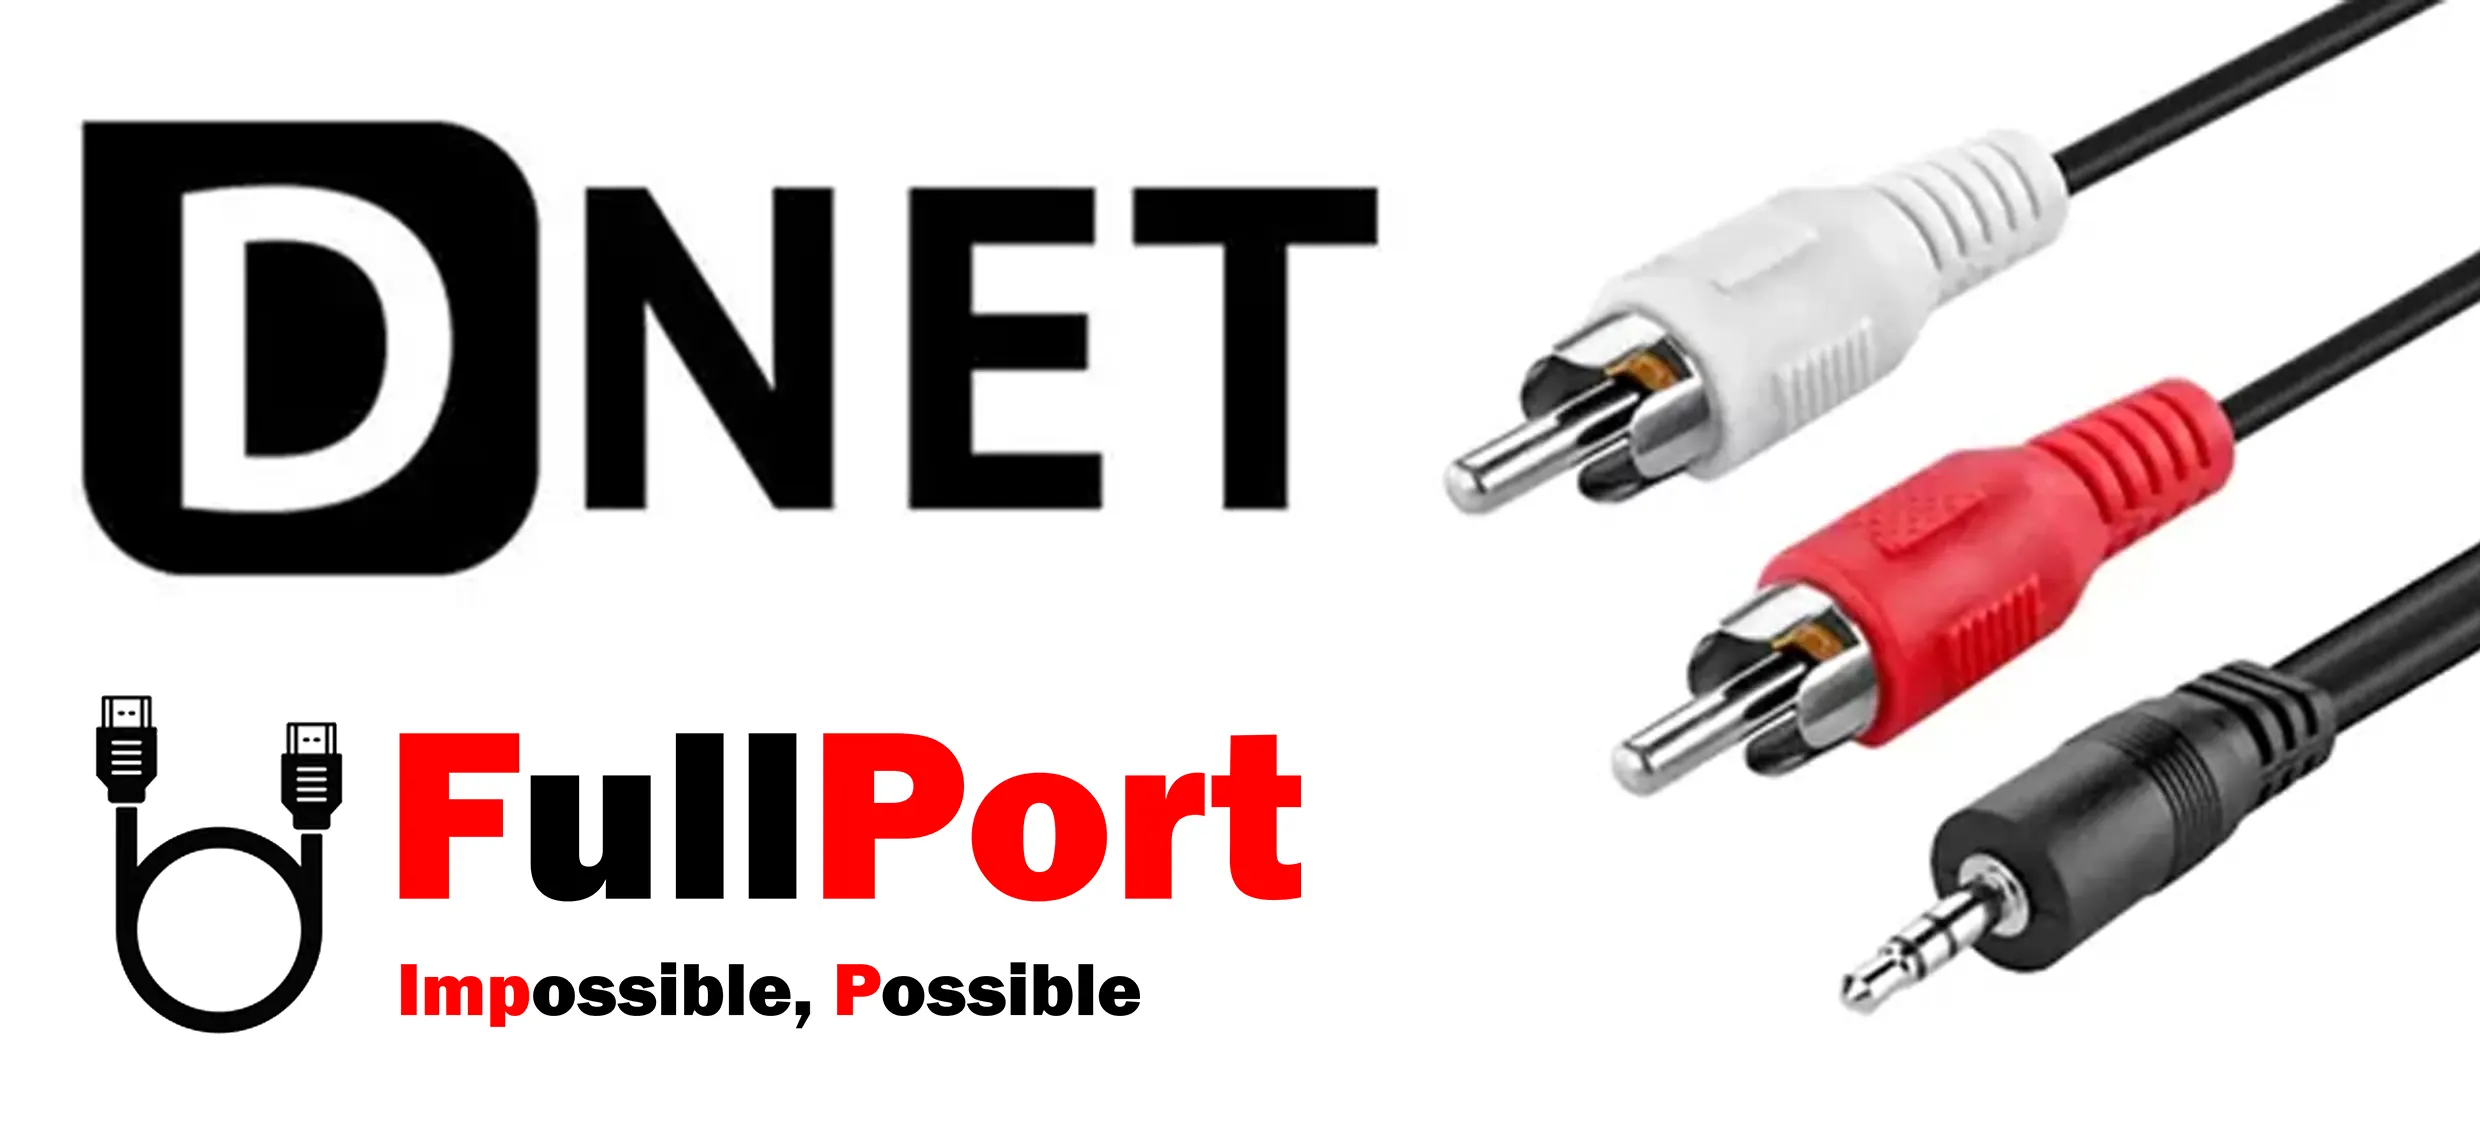 خرید کابل صدا 1 به 2 دی نت | D-NET طول 5 متر یا معادل 500 سانتیمتر یا 500CM از فروشگاه اینترنتی فول پورت